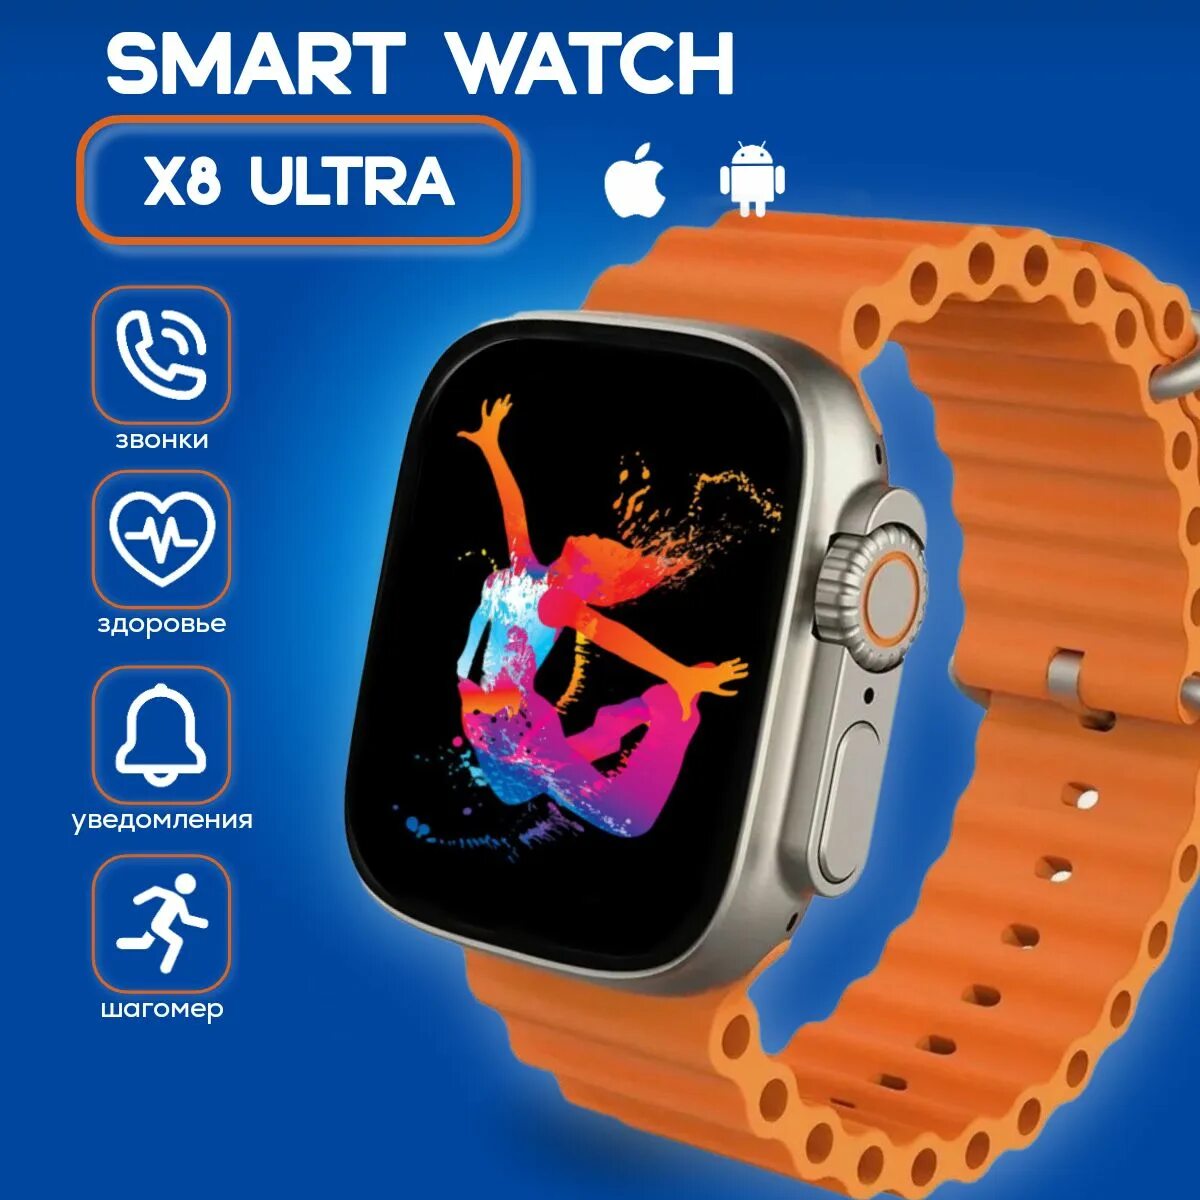 X ultra часы. X8 Ultra Smart watch. SMARTWATCH 8 Ultra. Смарт часы x8 Plus Ultra. Умные часы x8 Ultra смарт часы.